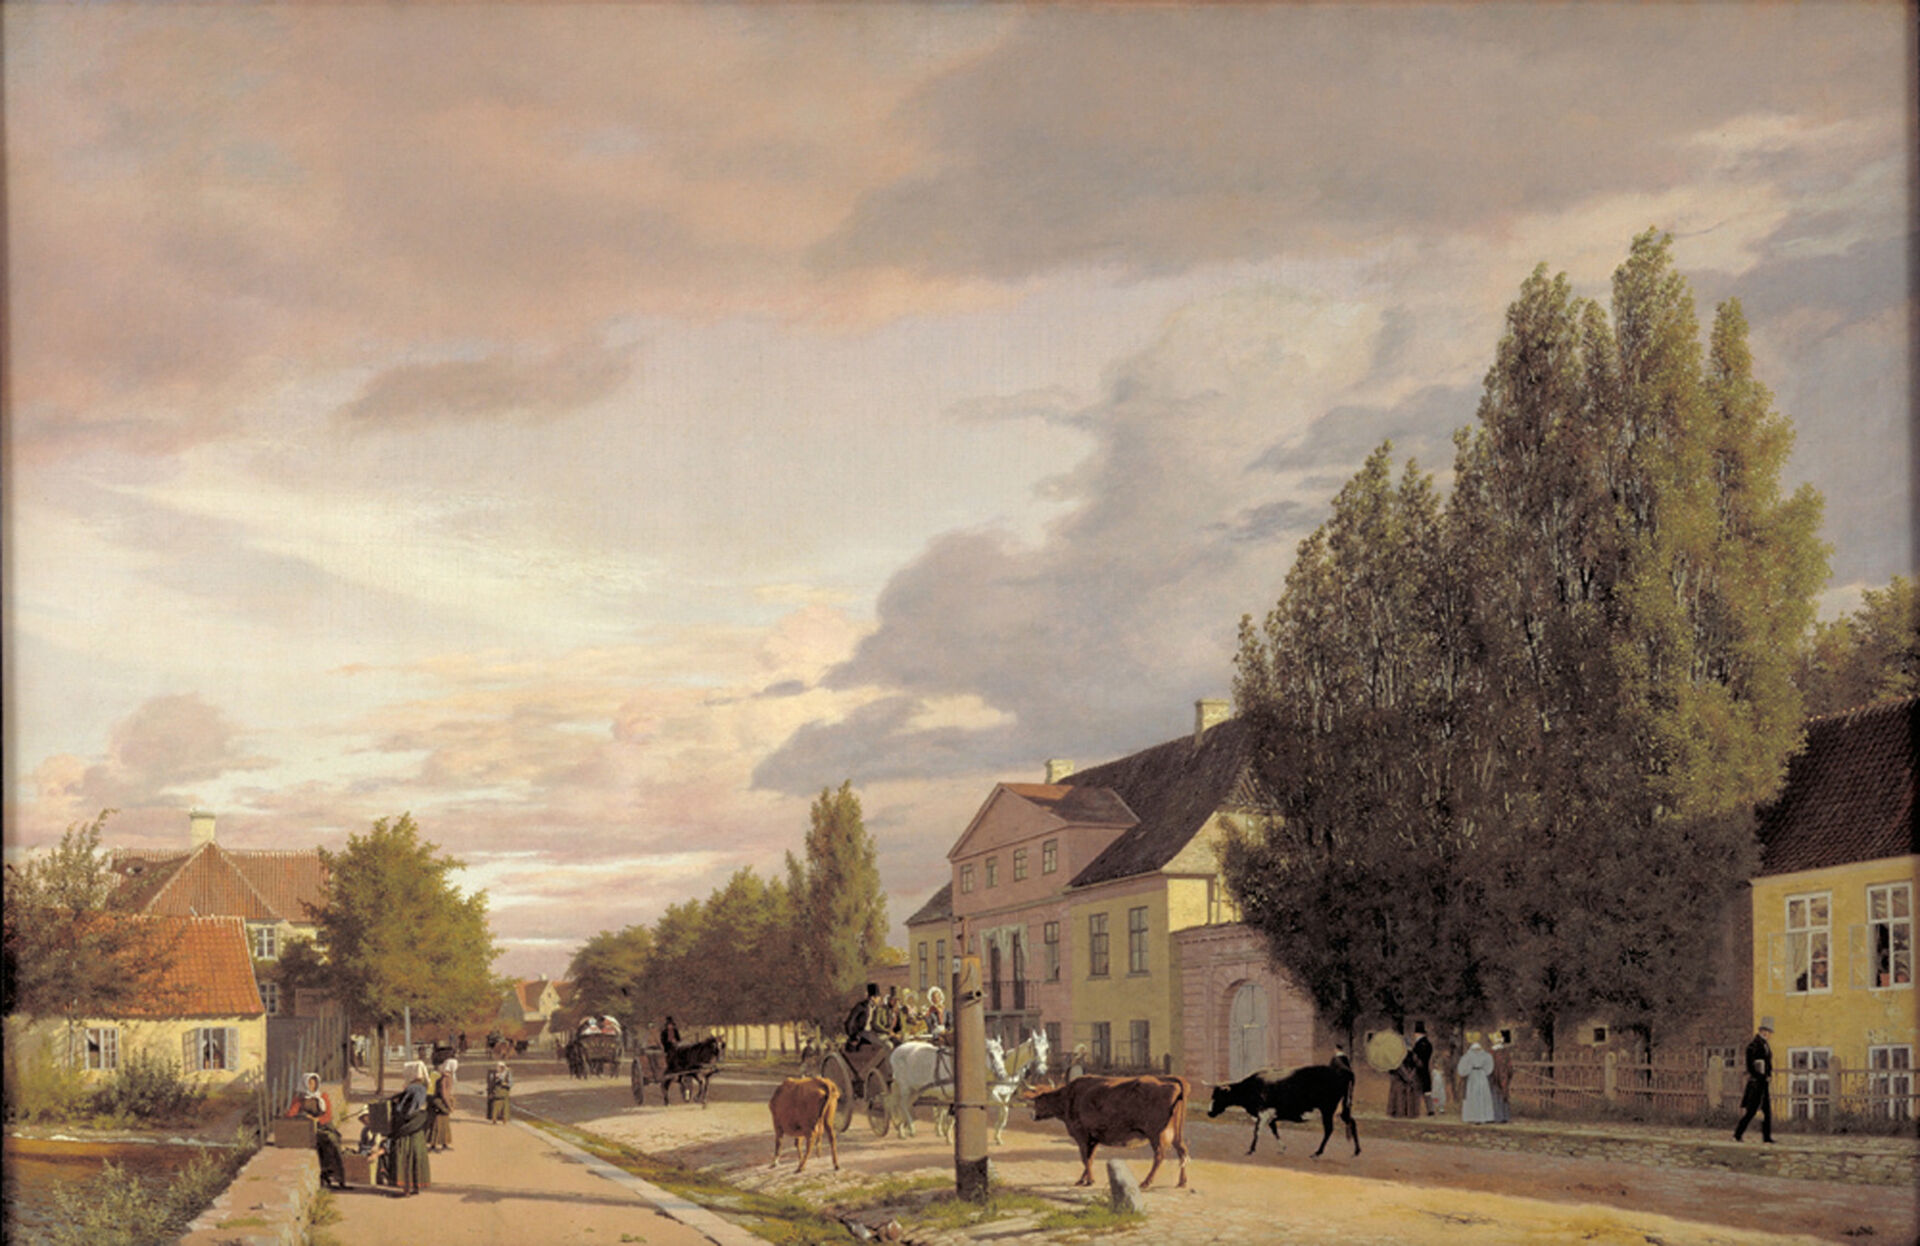 Christen Købke, Parti af Østerbro i morgenbelysning, 1836. Olja på duk. Statens Museum for Kunst.